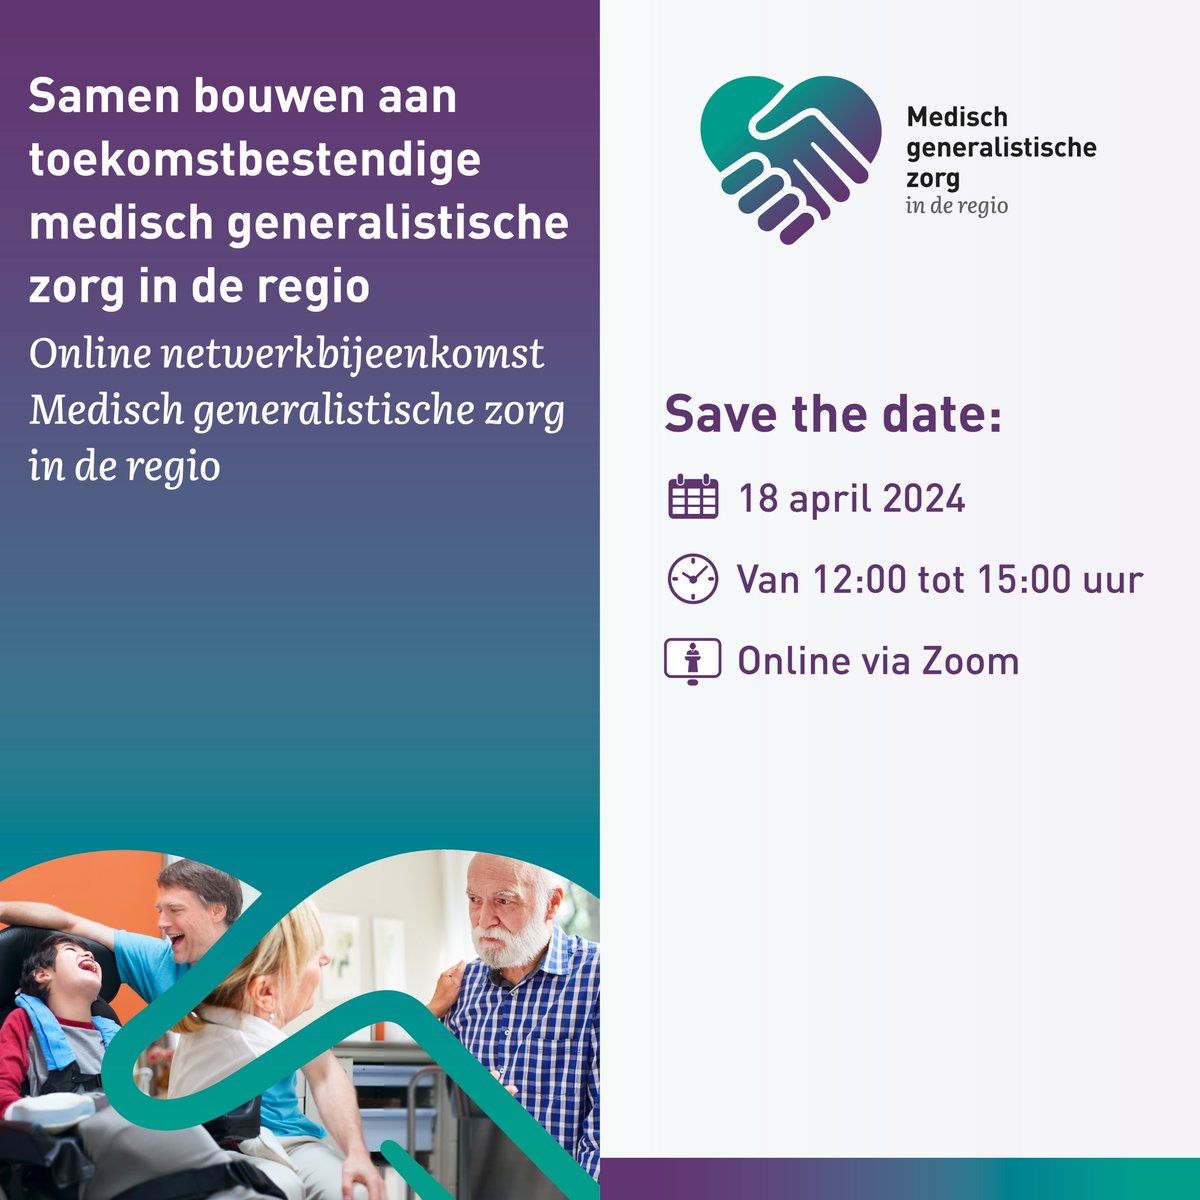 Samen met @Vilans en het @MinVWS organiseren we op 18 april tussen 12:00 en 15:00 uur een online lunch- en netwerkbijeenkomst ‘Samen bouwen aan toekomstbestendige medisch generalistische zorg in de regio’. #mgz Meld je aan via vilans.nl/actueel/agenda…